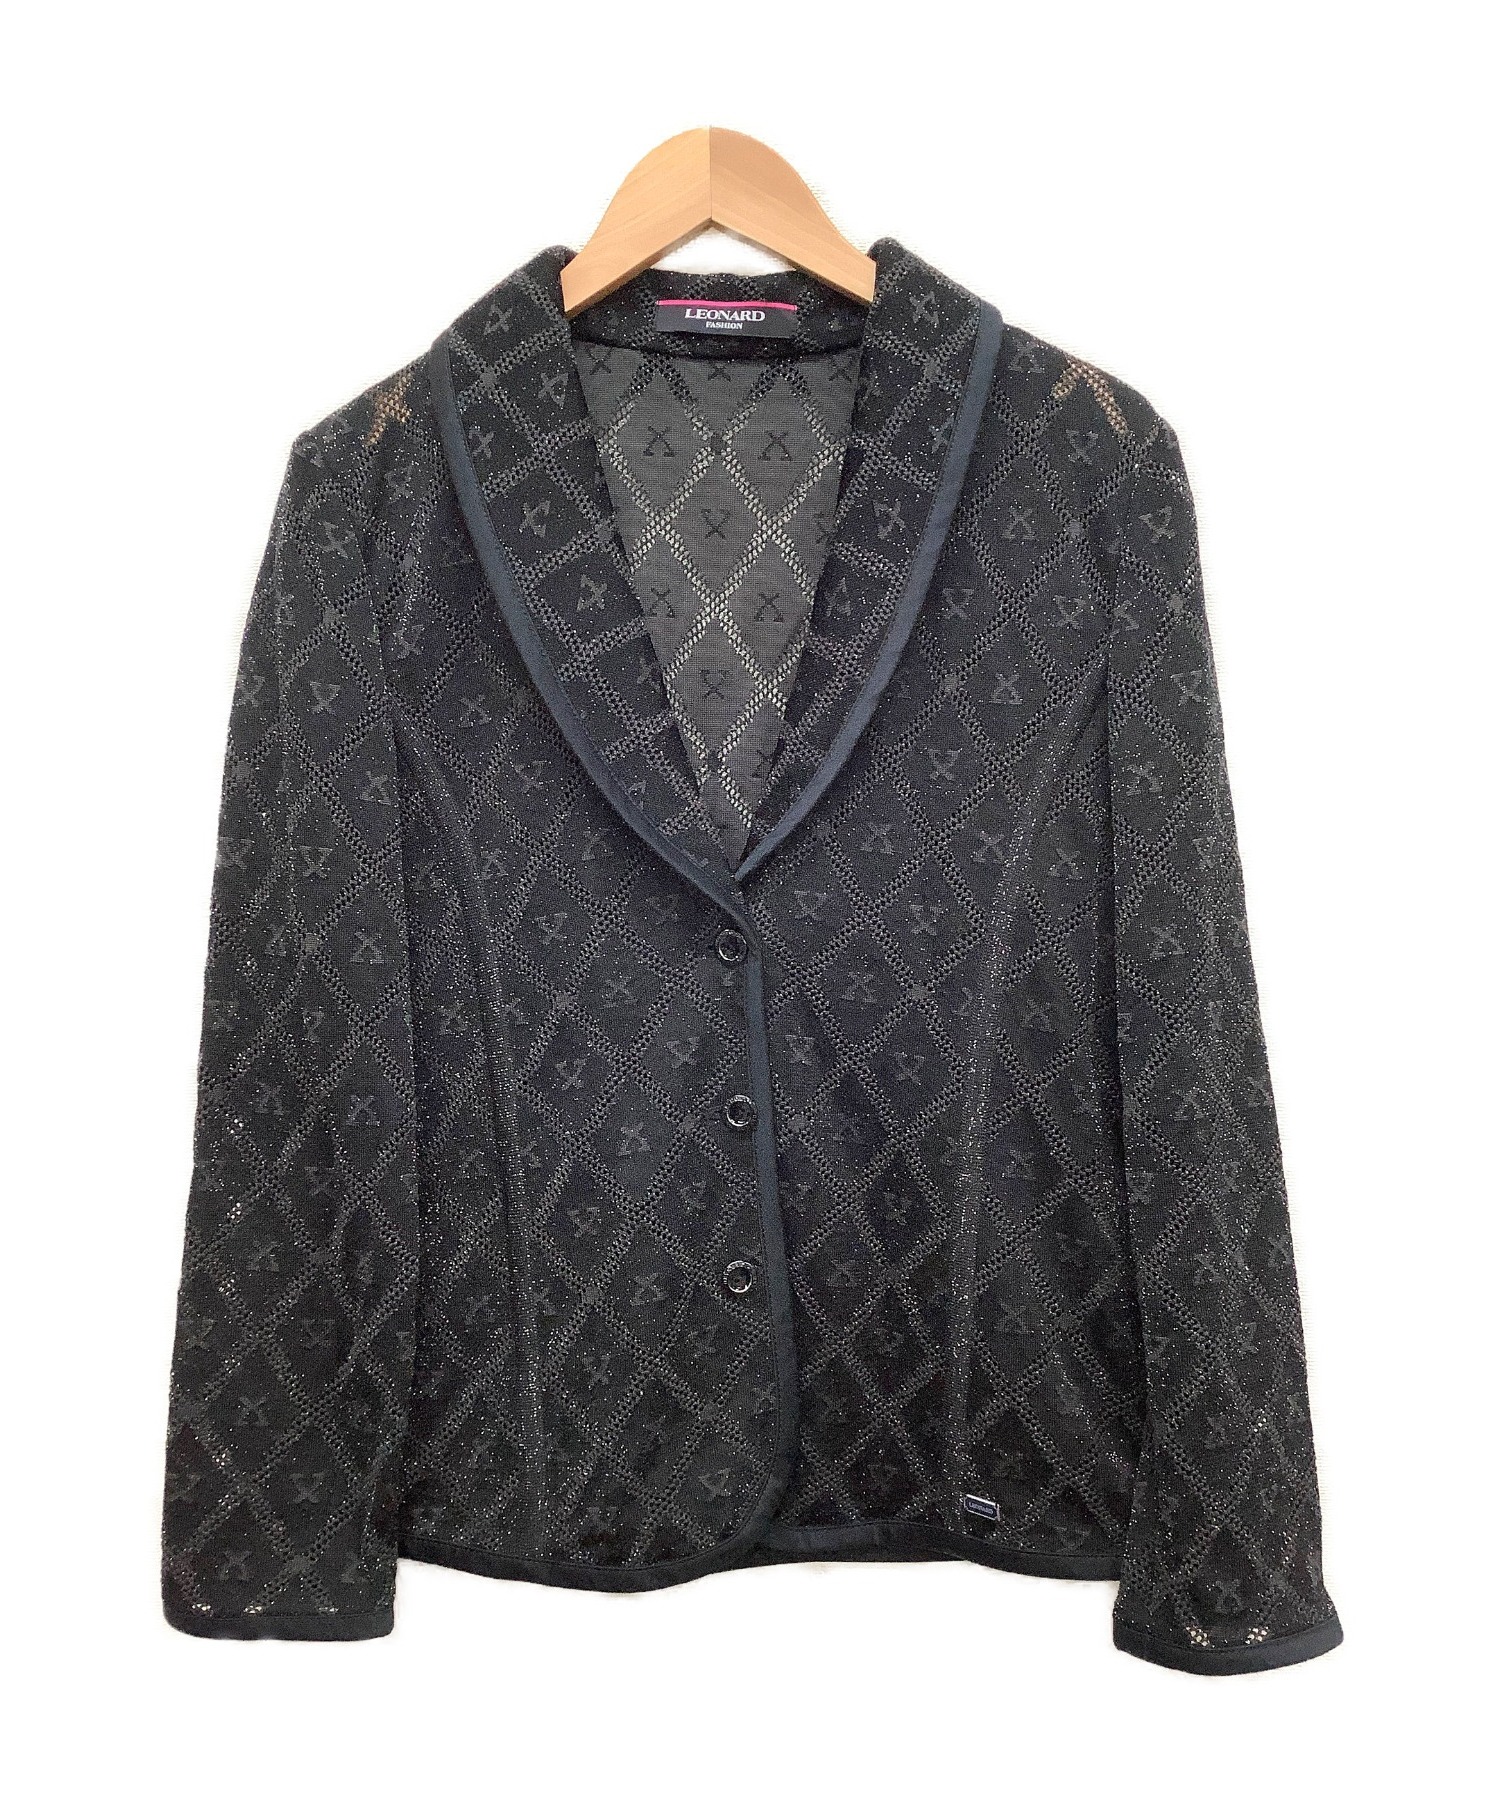 LEONARD (レオナール) ラメメッシュシルクジャケット ブラック サイズ:42 秋物 シルク62%